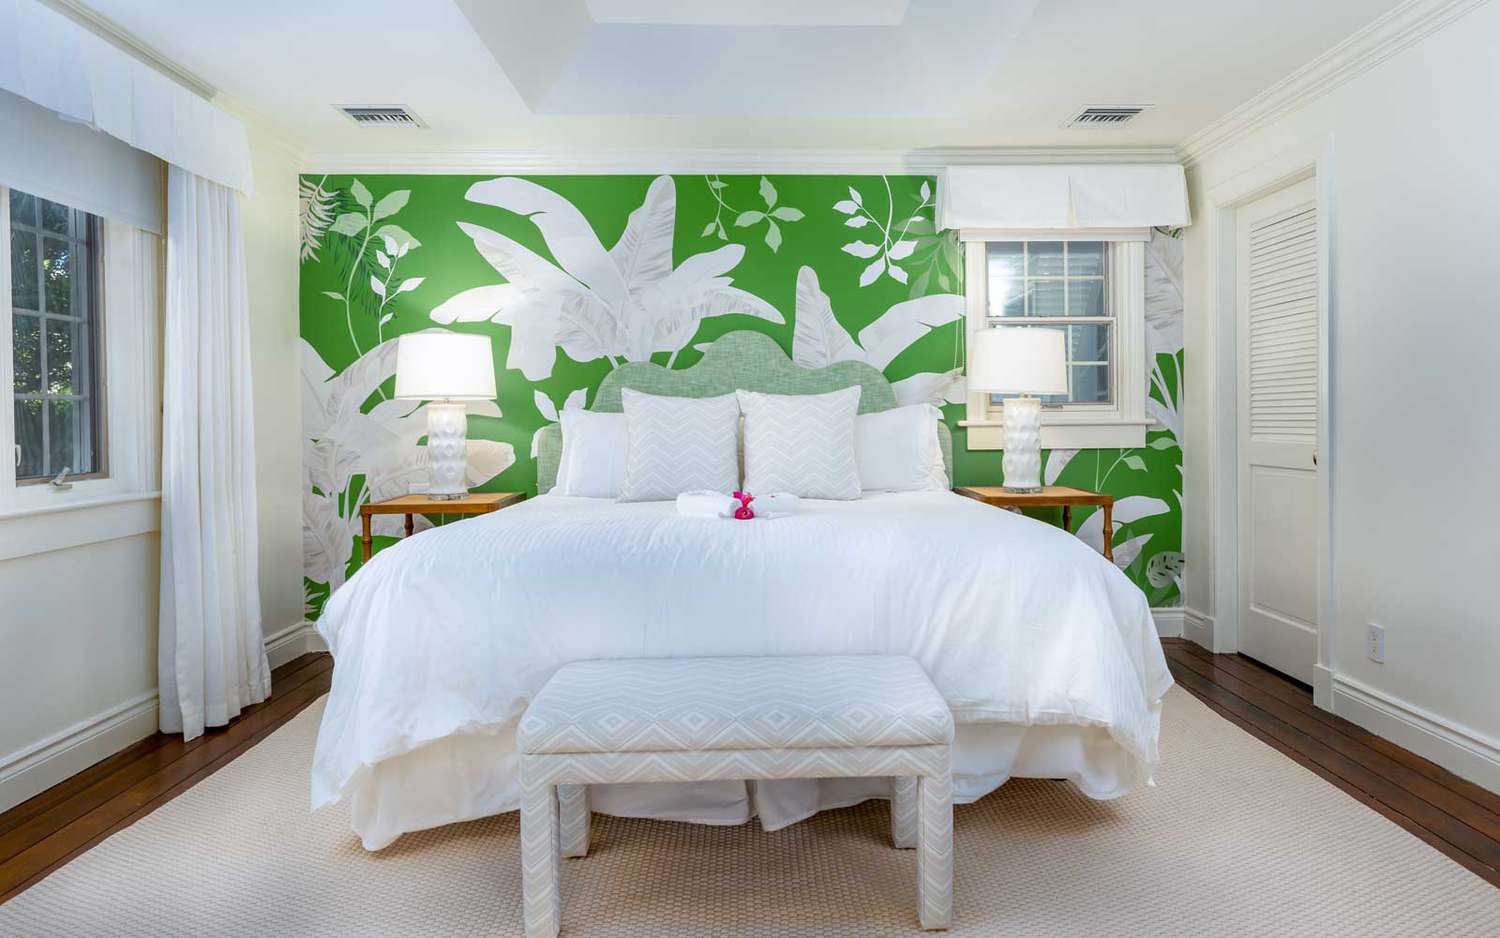 Une chambre d'hôtes au complexe hôtelier Point Grace dans les îles Turques et Caïques, avec un mur imprimé tropical vert et blanc